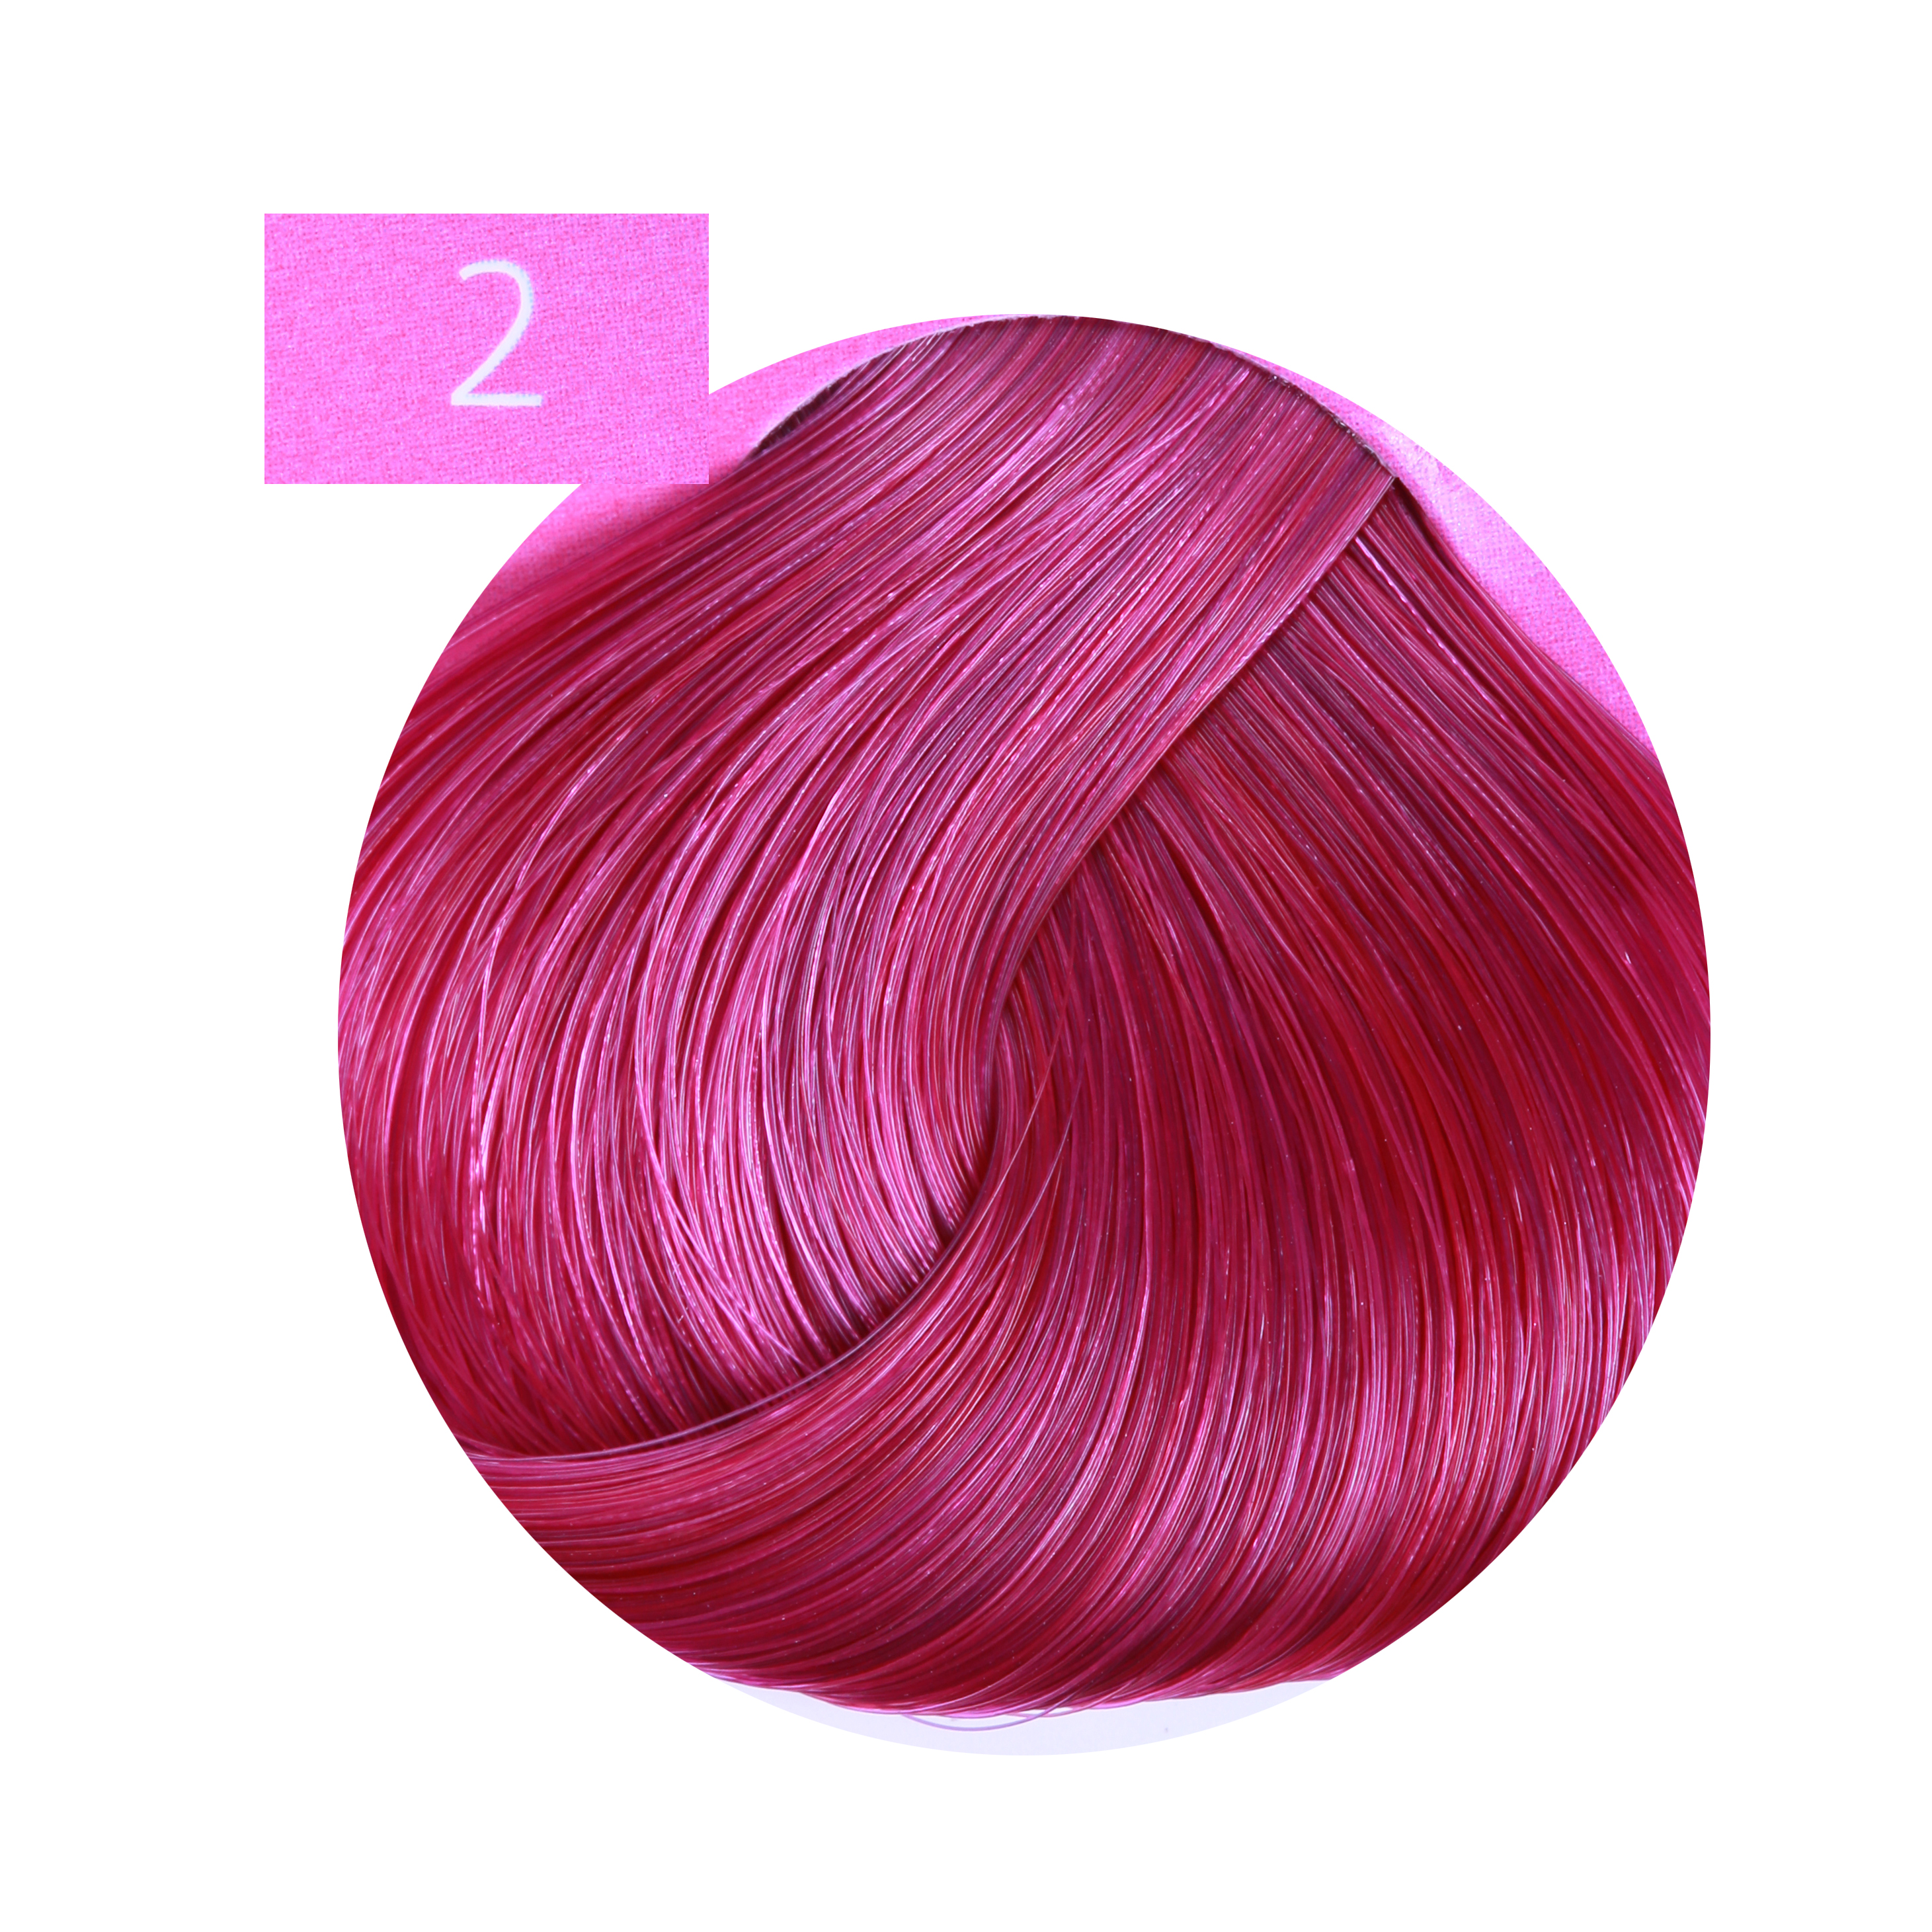 ESTEL PROFESSIONAL 2 краска для волос, лиловый / ESSEX Princess Fashion 60 мл louis vuitton catwalk the complete fashion collections